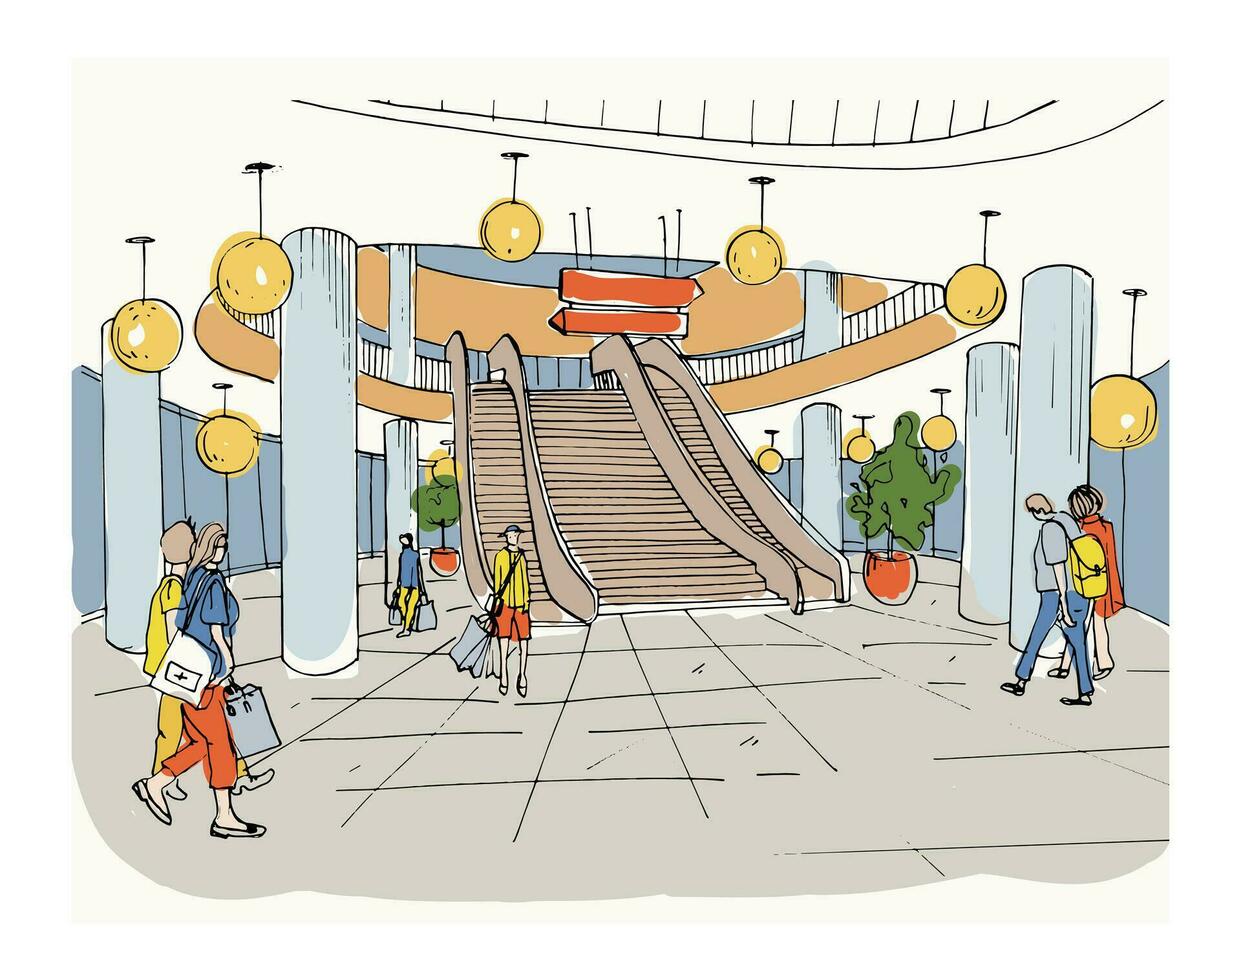 moderno interior compras centro, centro comercial. vistoso bosquejo ilustración. vector